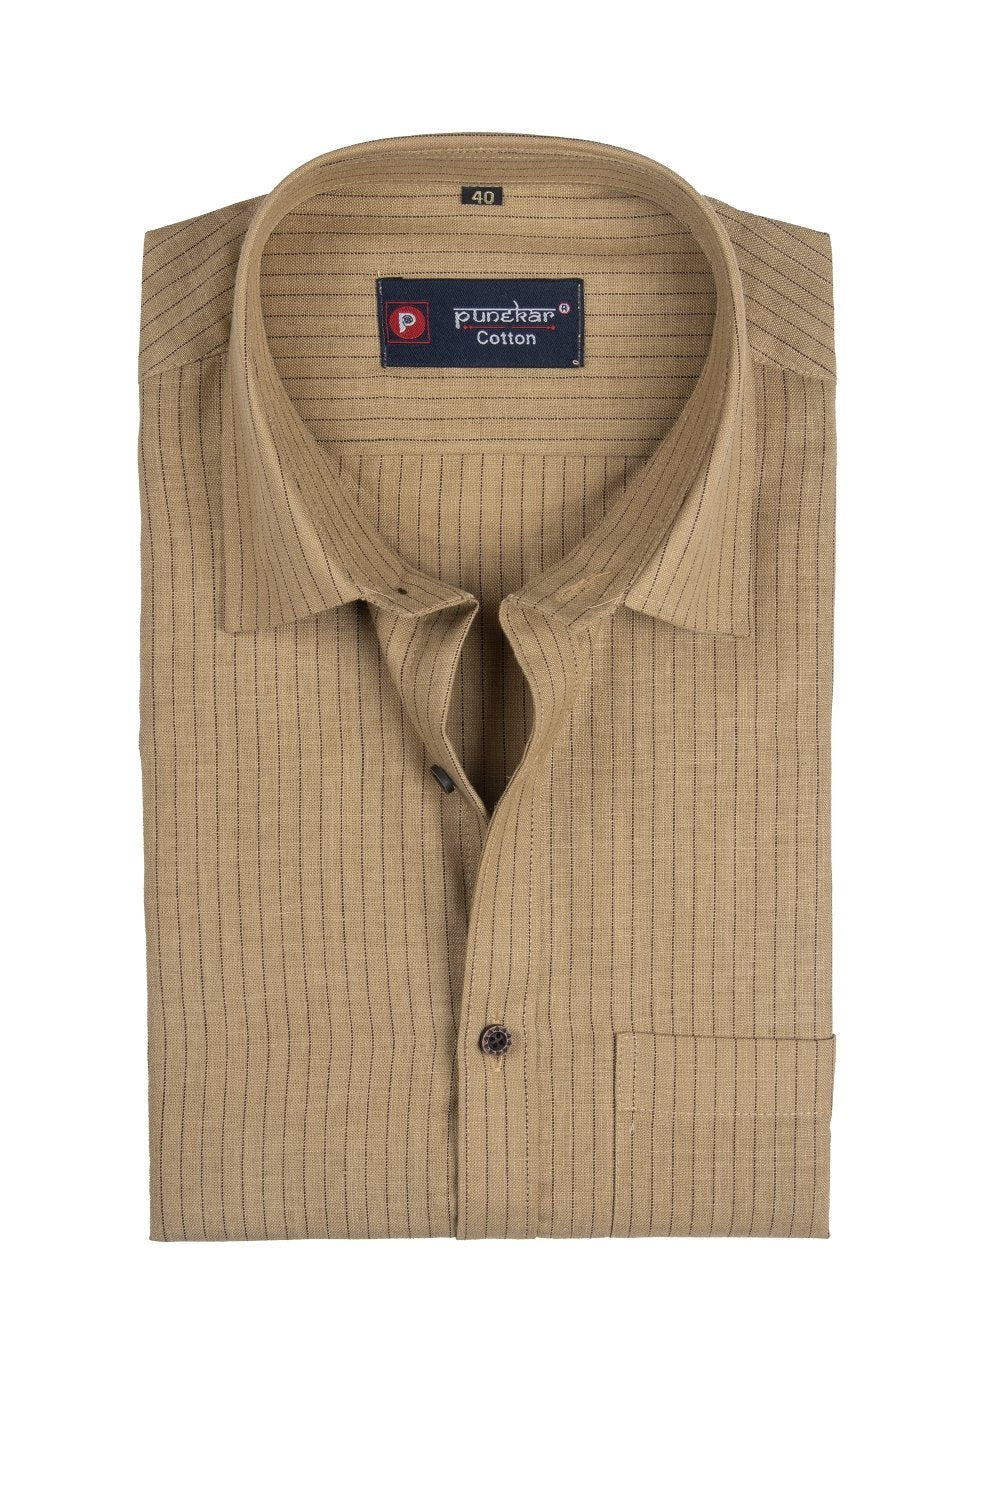 Punekar Cotton Multi Color Linning Criss Cross Woven Cotton Shirt for Men's. - Punekar Cotton